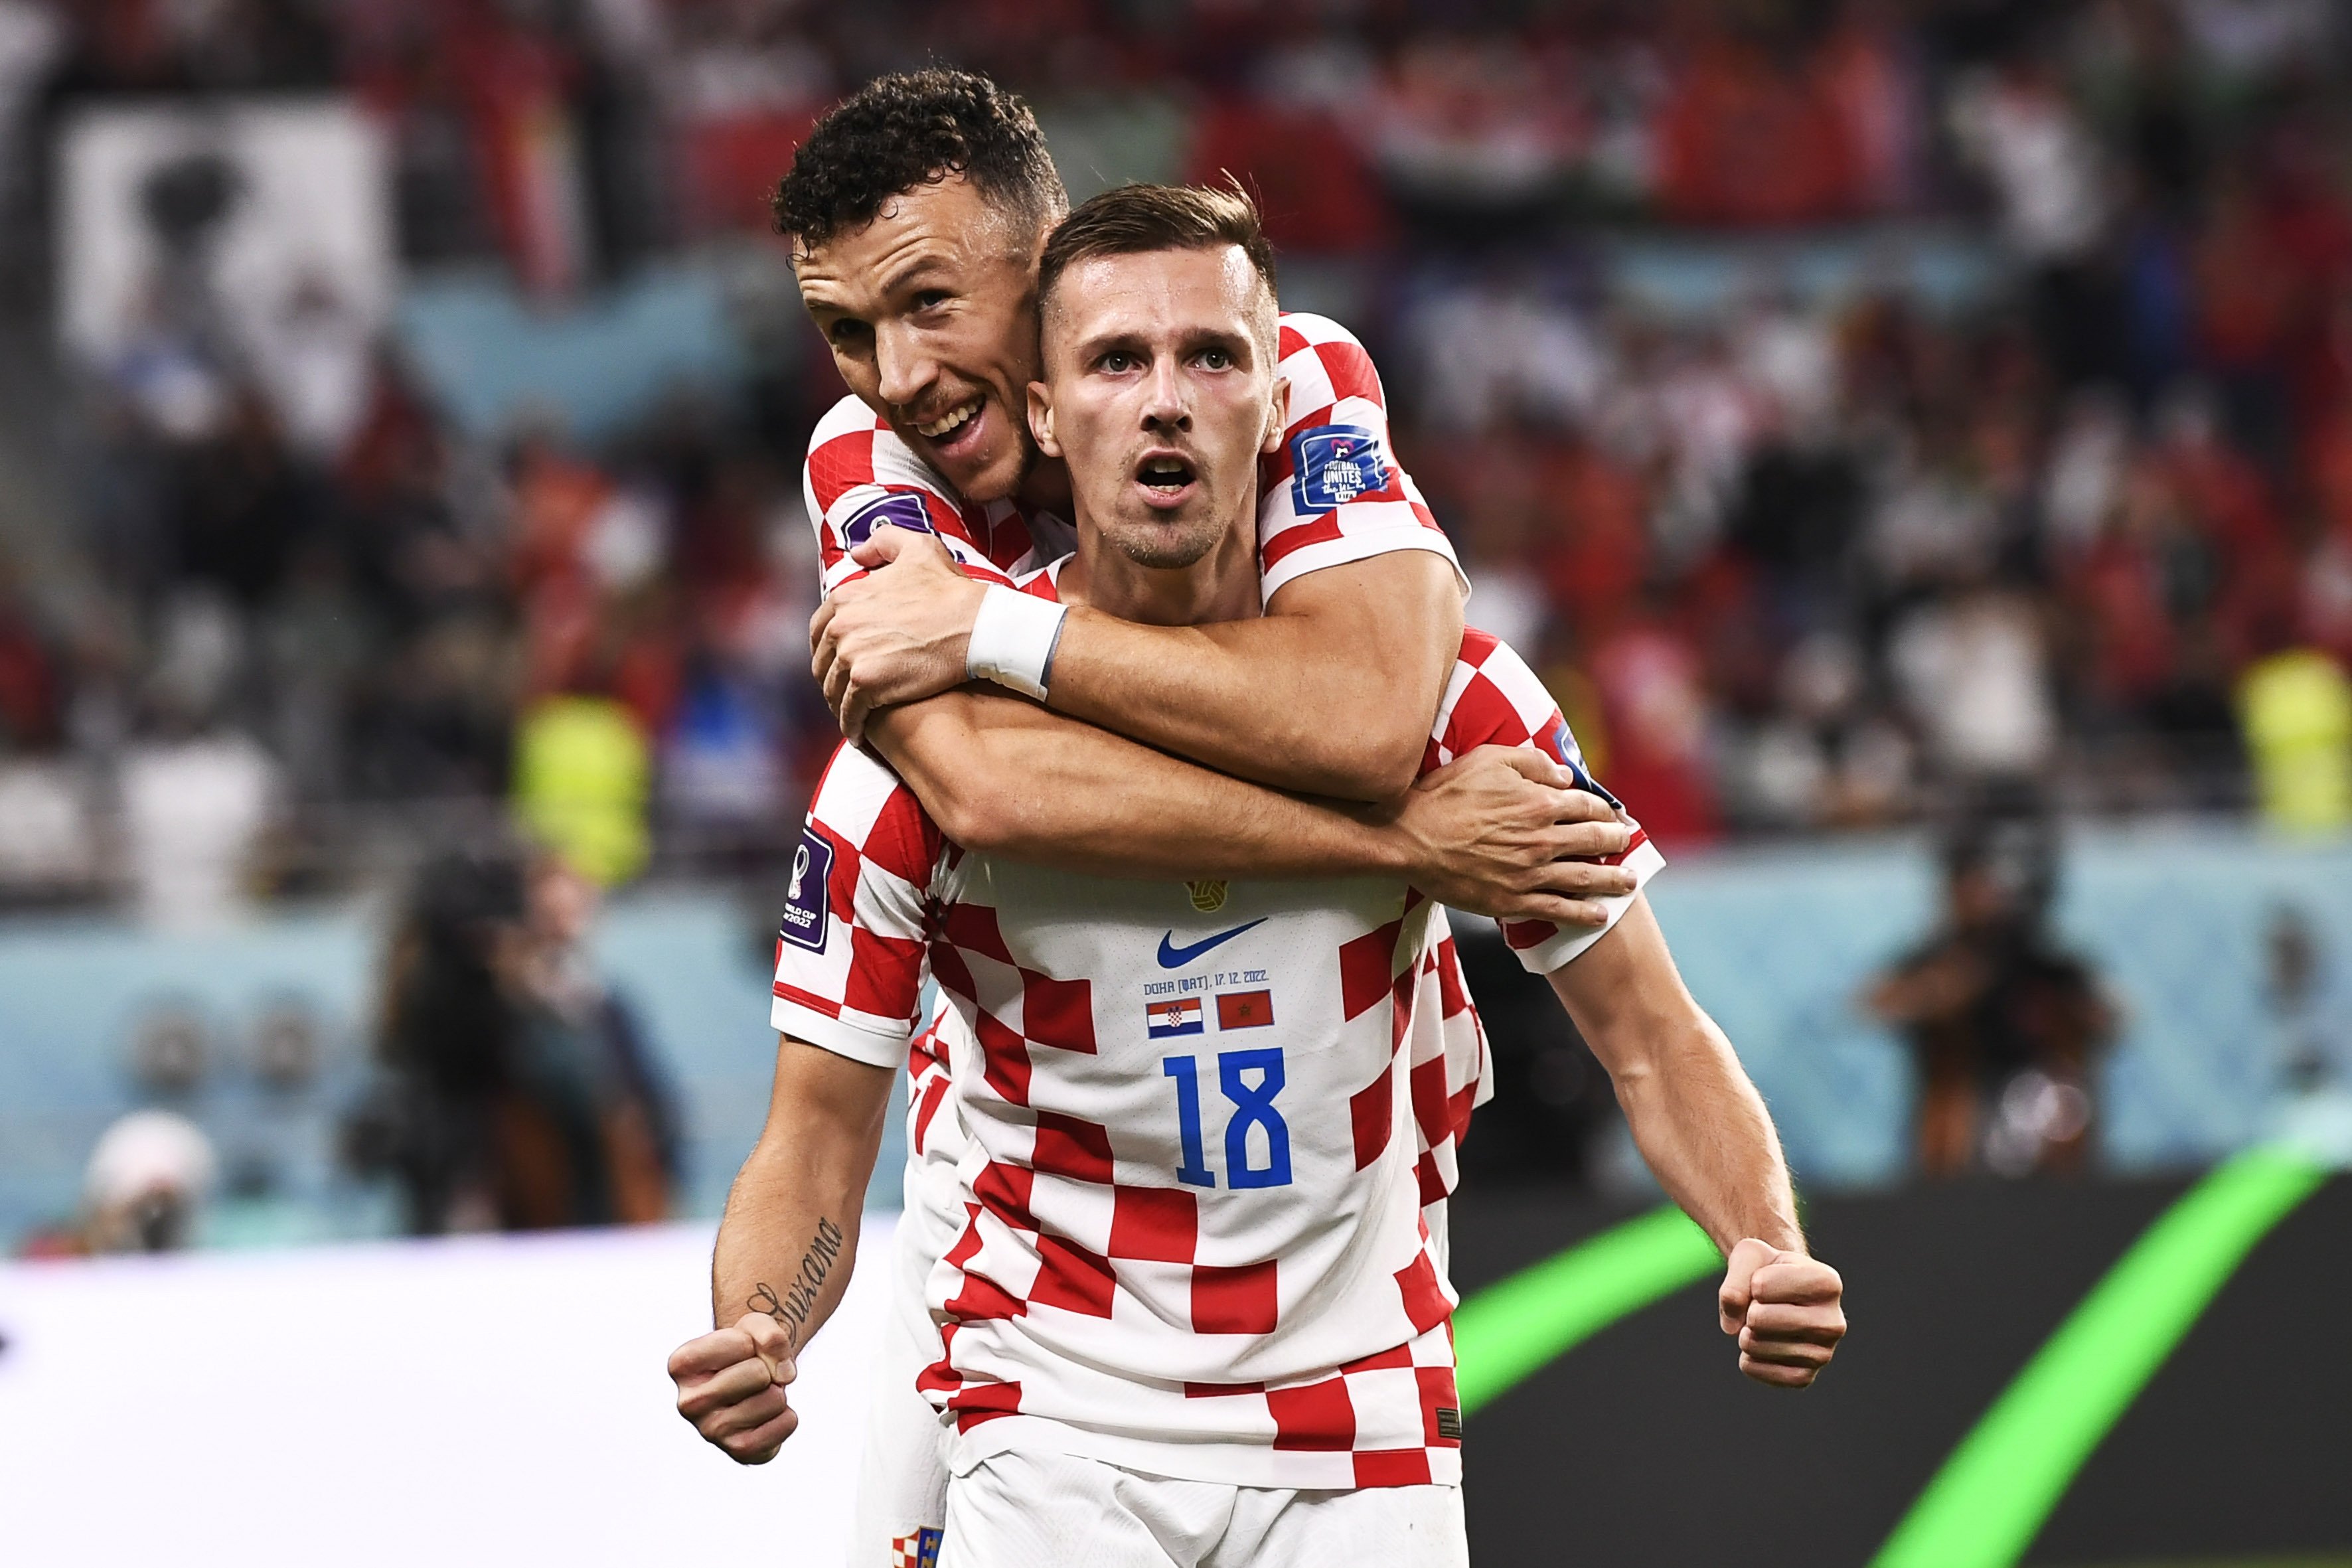 França e Croácia disputam a final da Copa do Mundo - Gazeta Esportiva